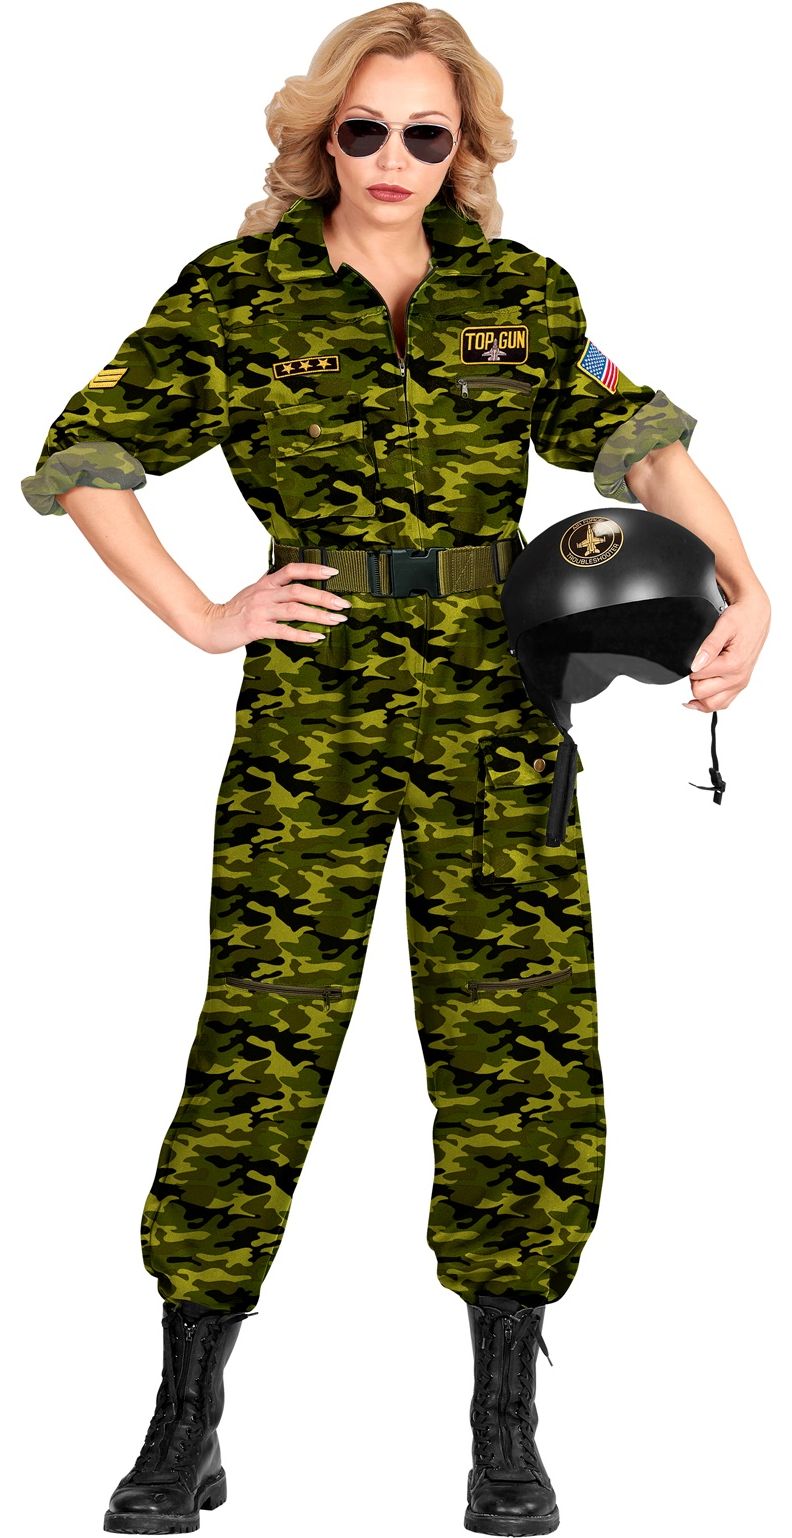 Camouflage top gun kostuum vrouwen